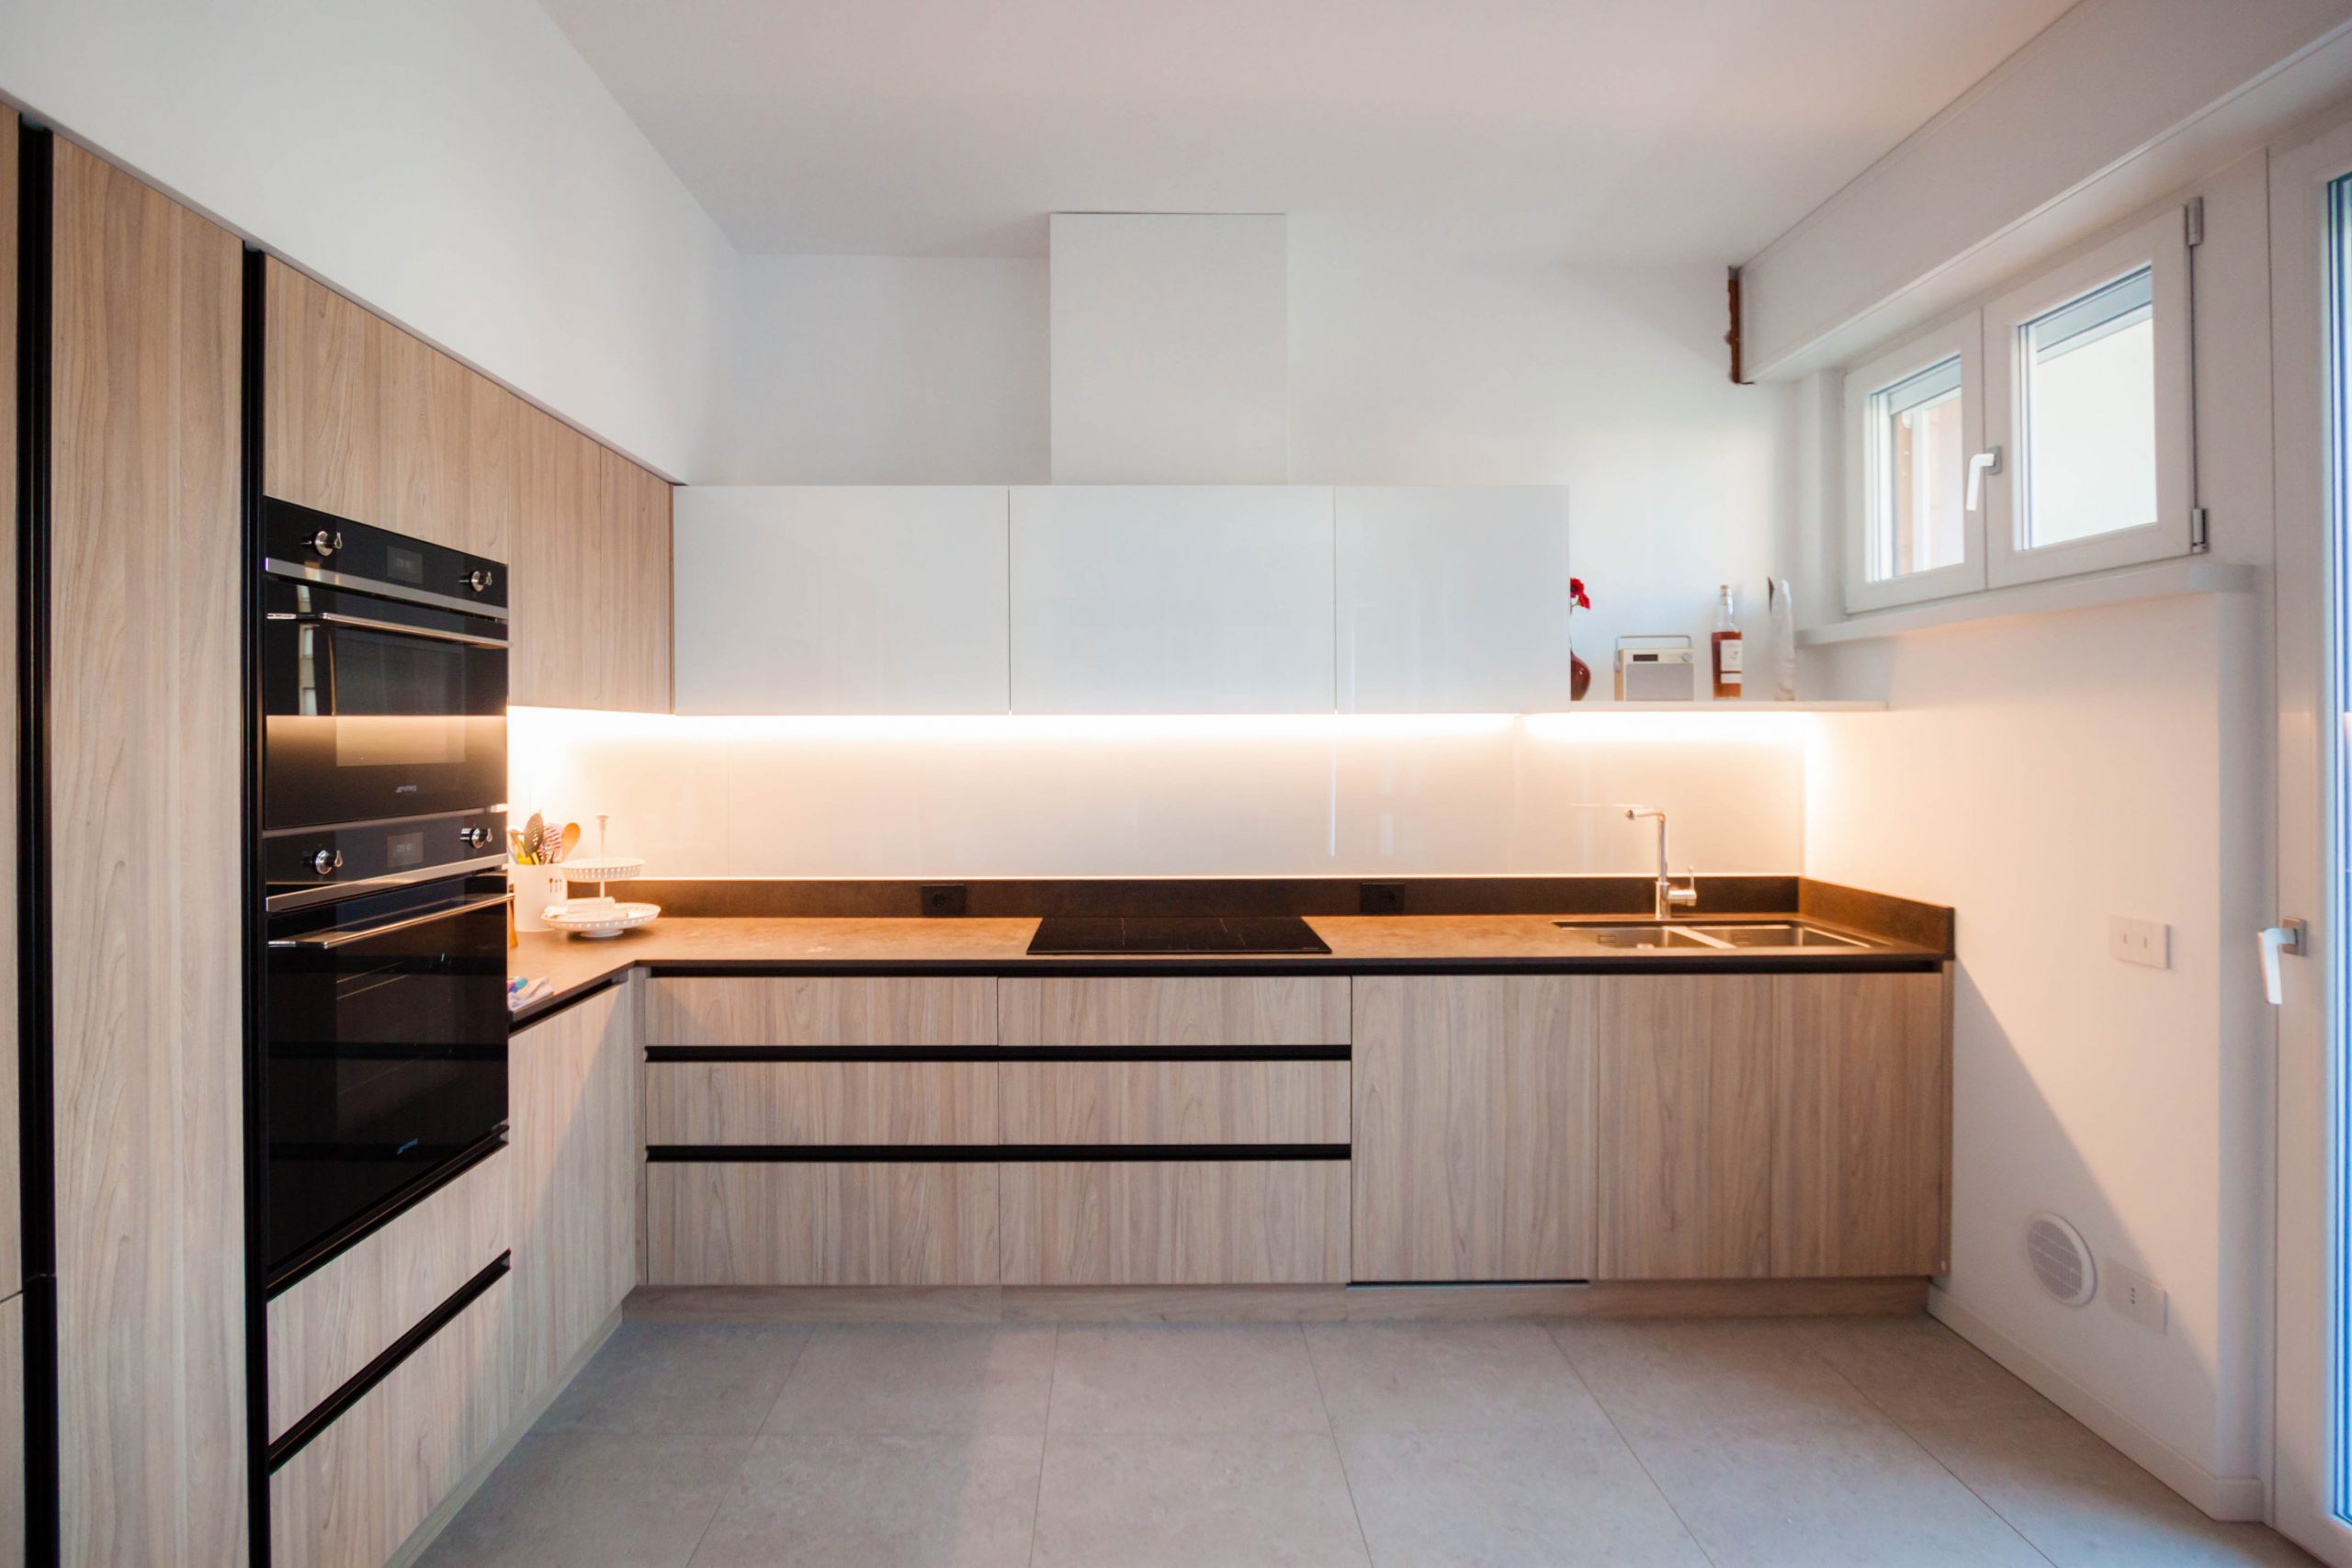 kitchen laminate wood effect white wall units